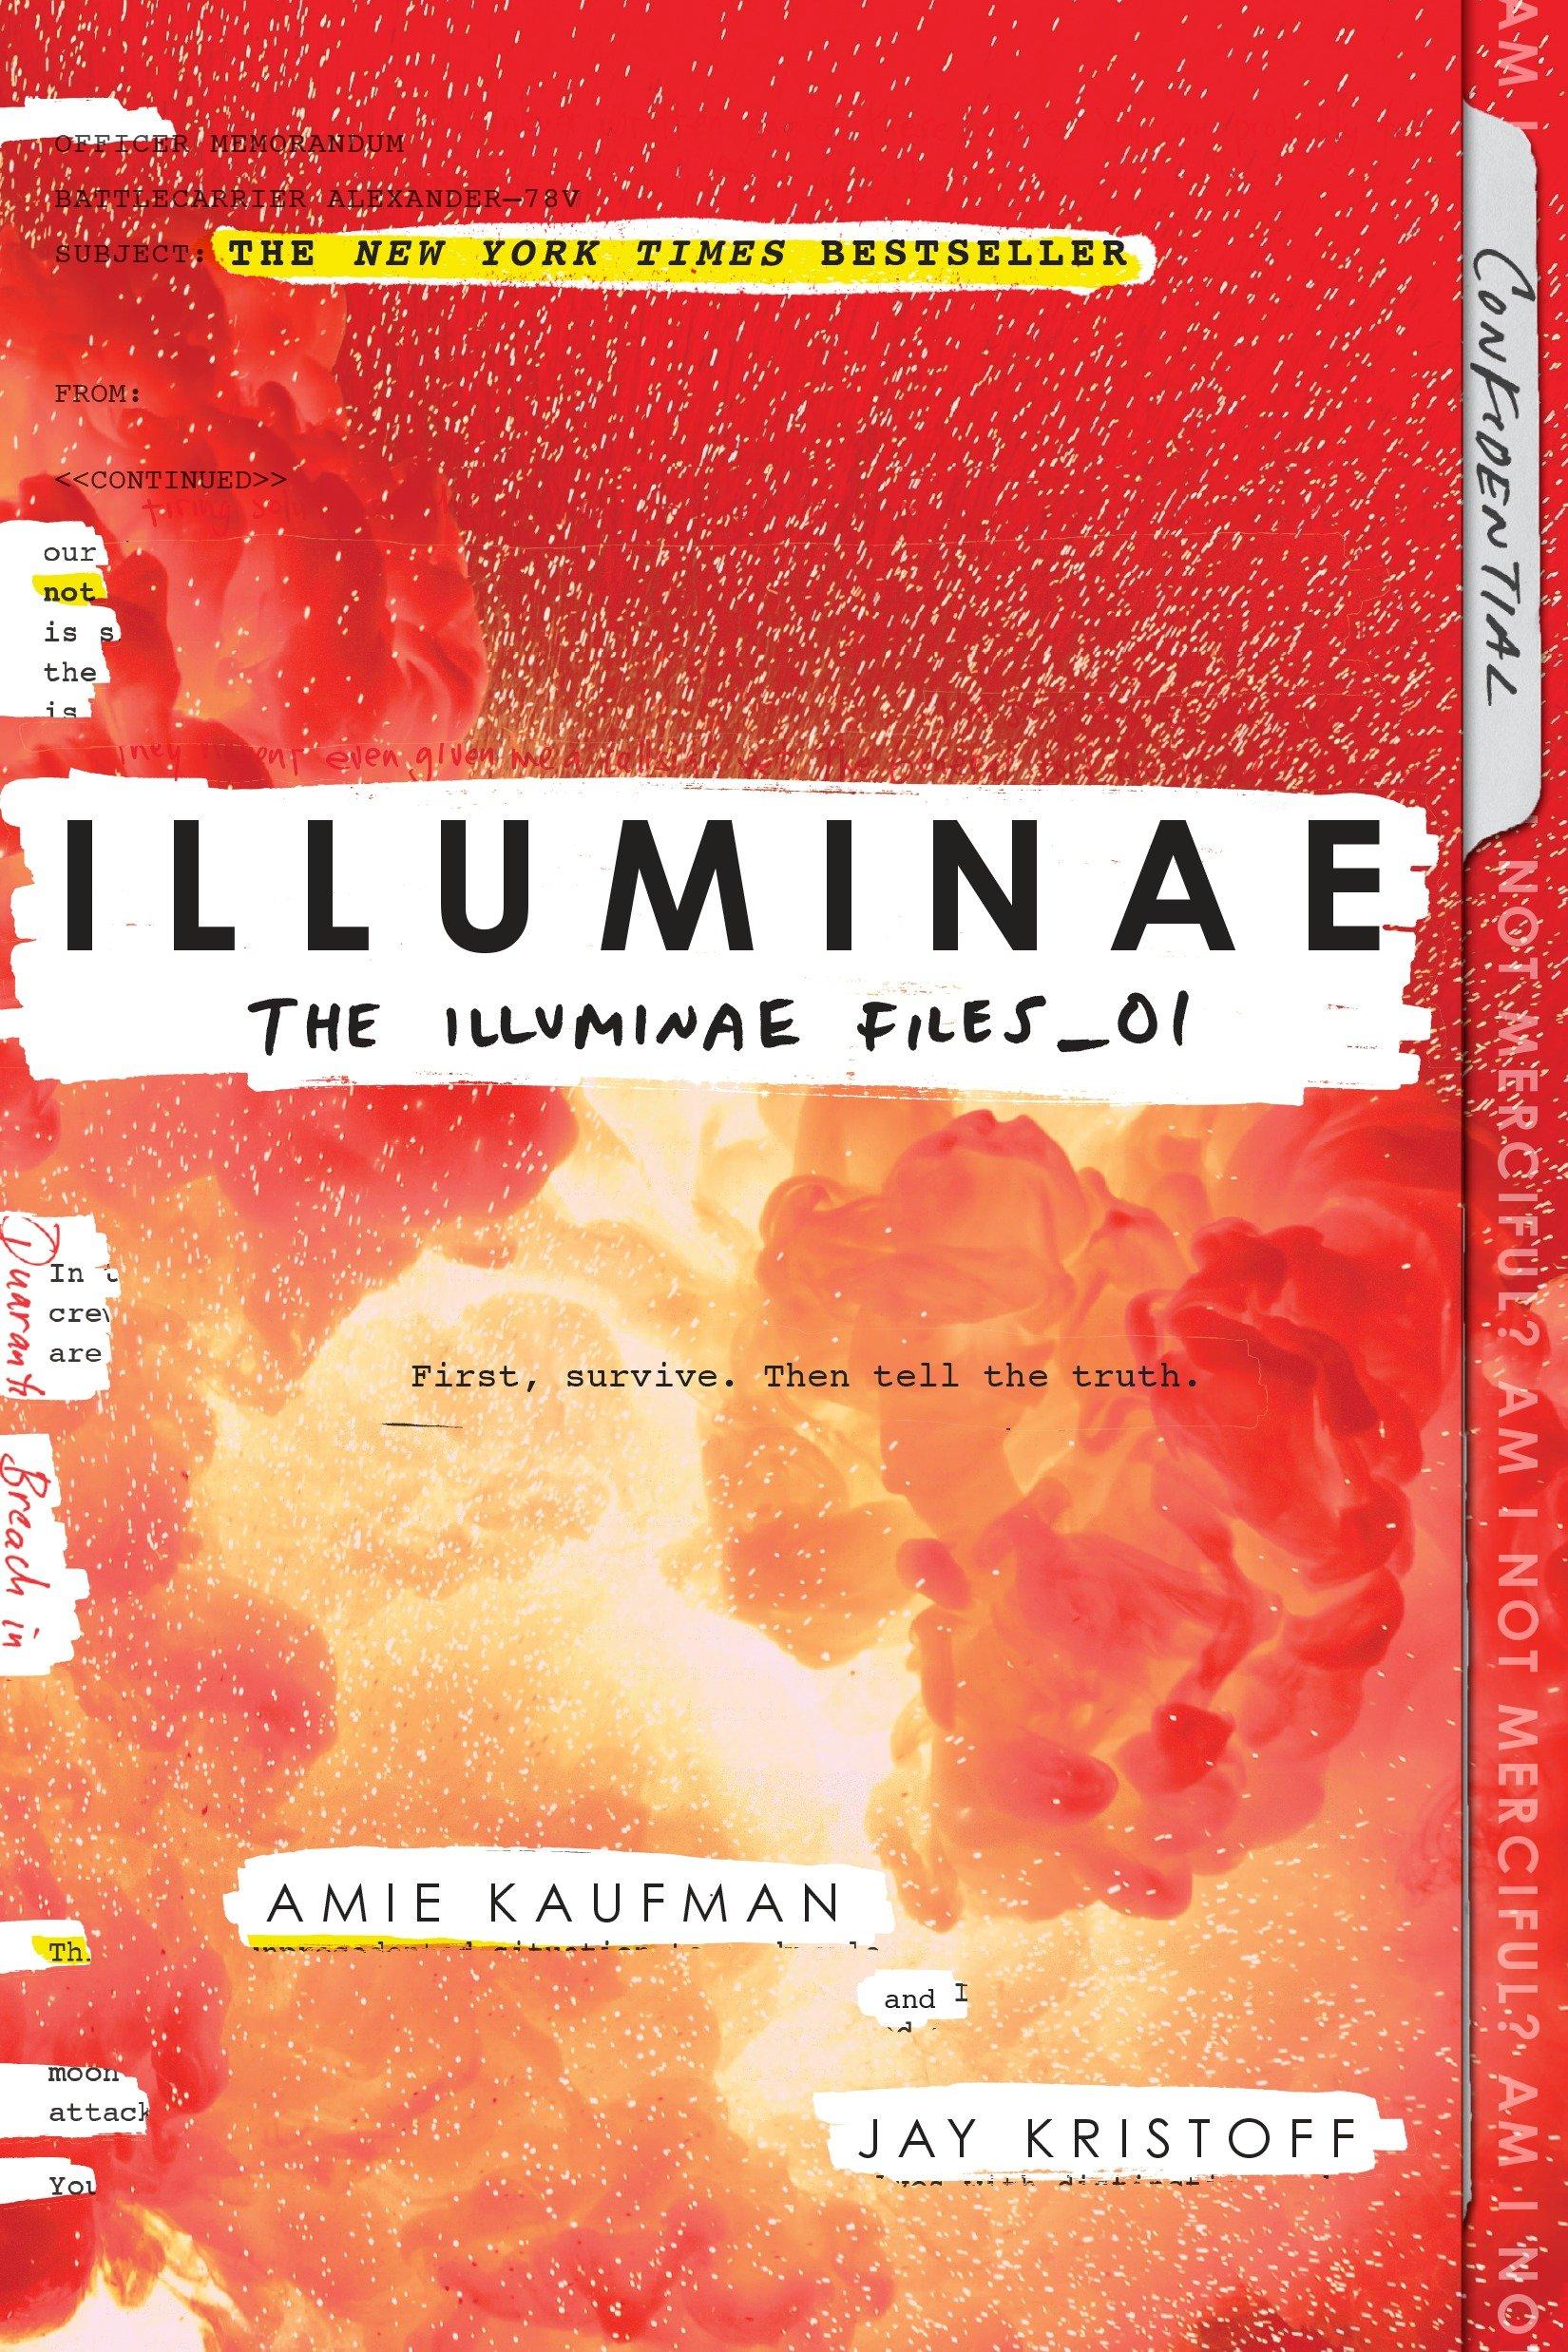 Amie Kaufman, Jay Kristoff: Illuminae (The Illuminae Files, #1) (2015)